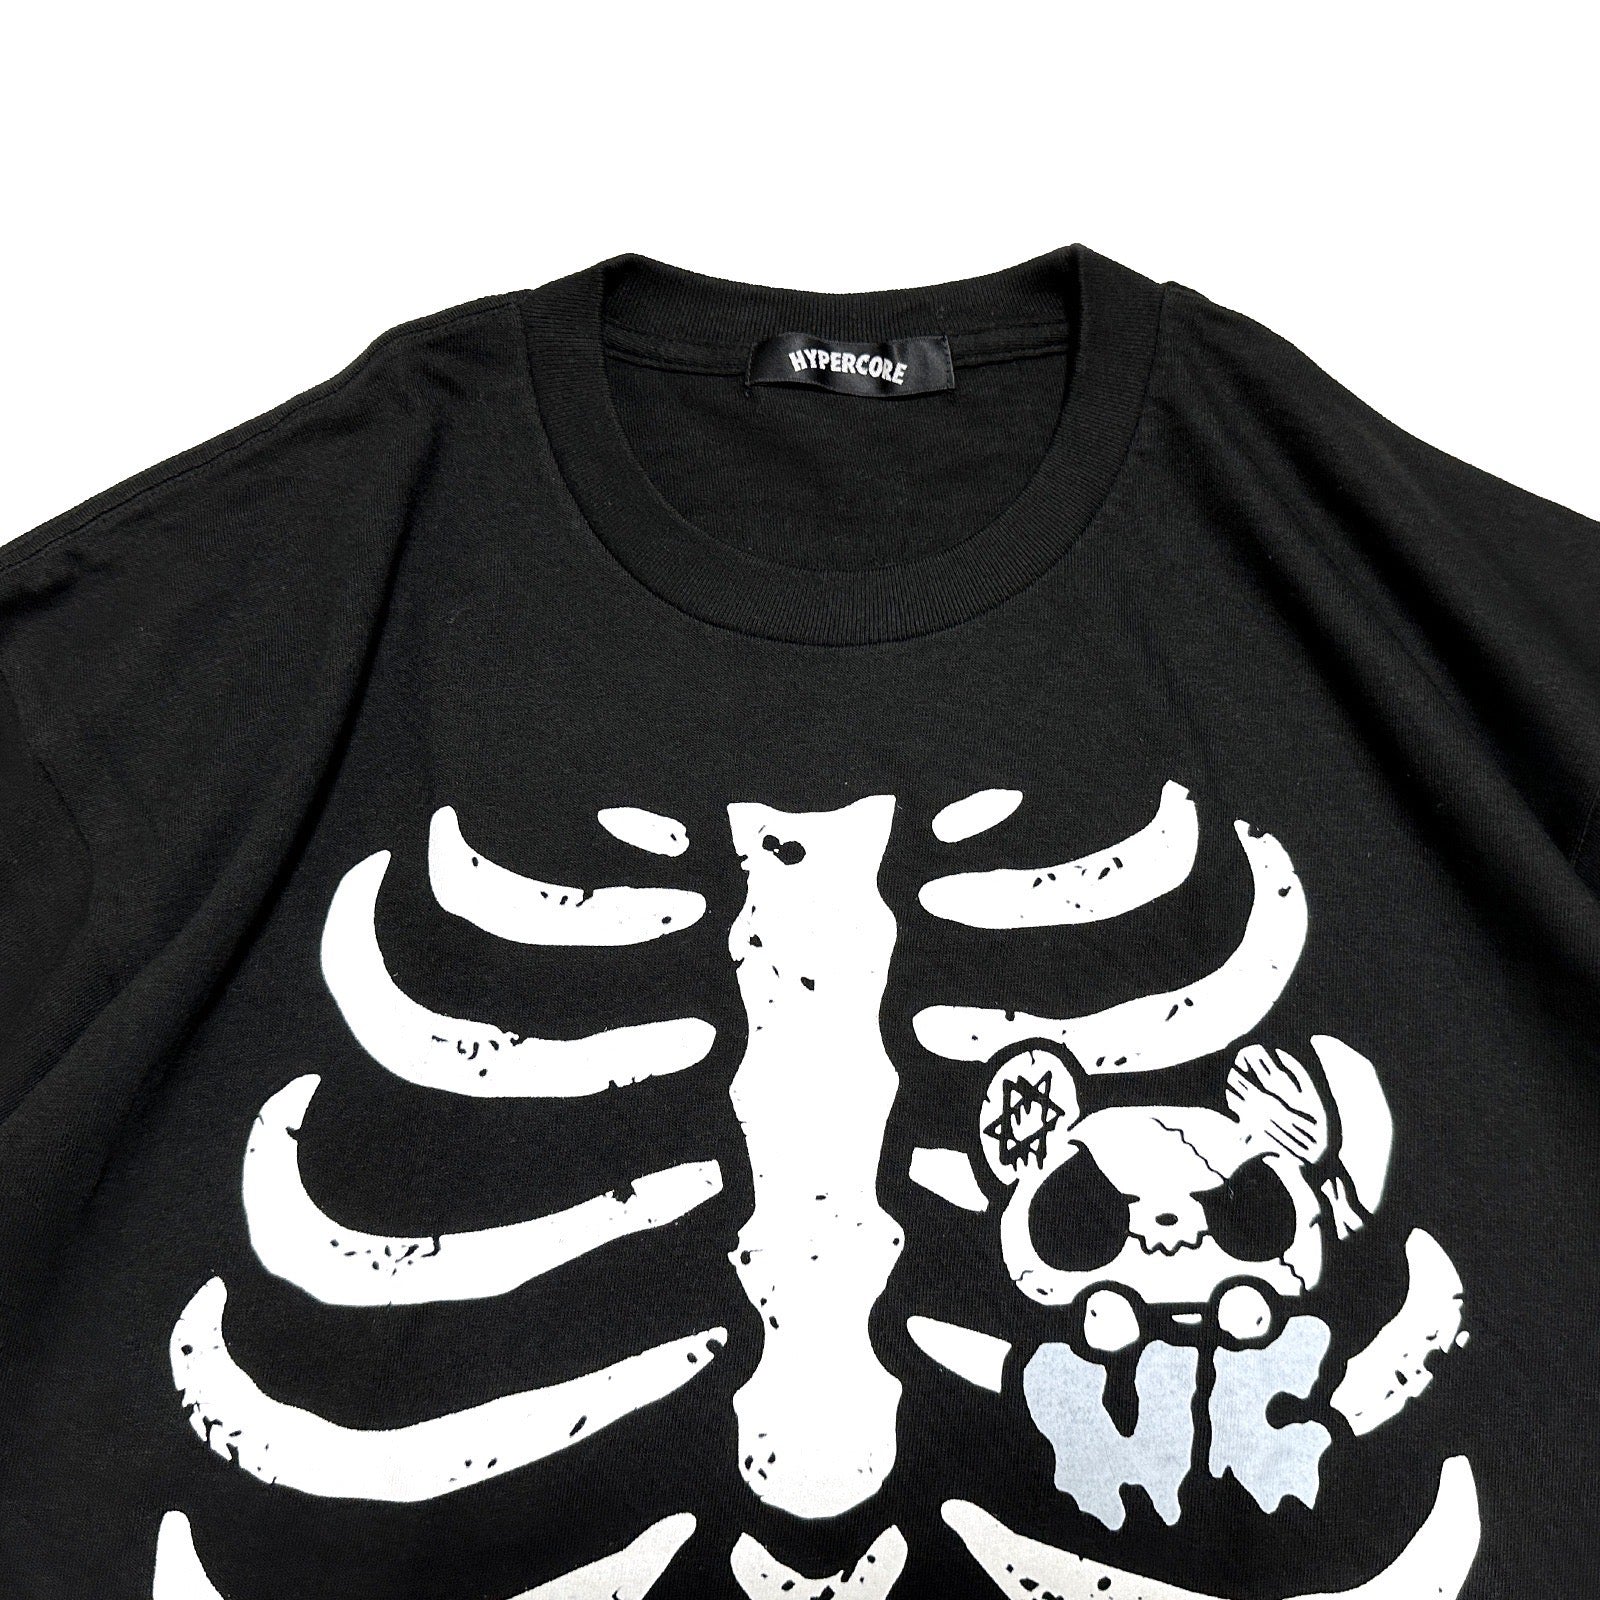 Hypercore "Sicks Dead Bear" t-shirt